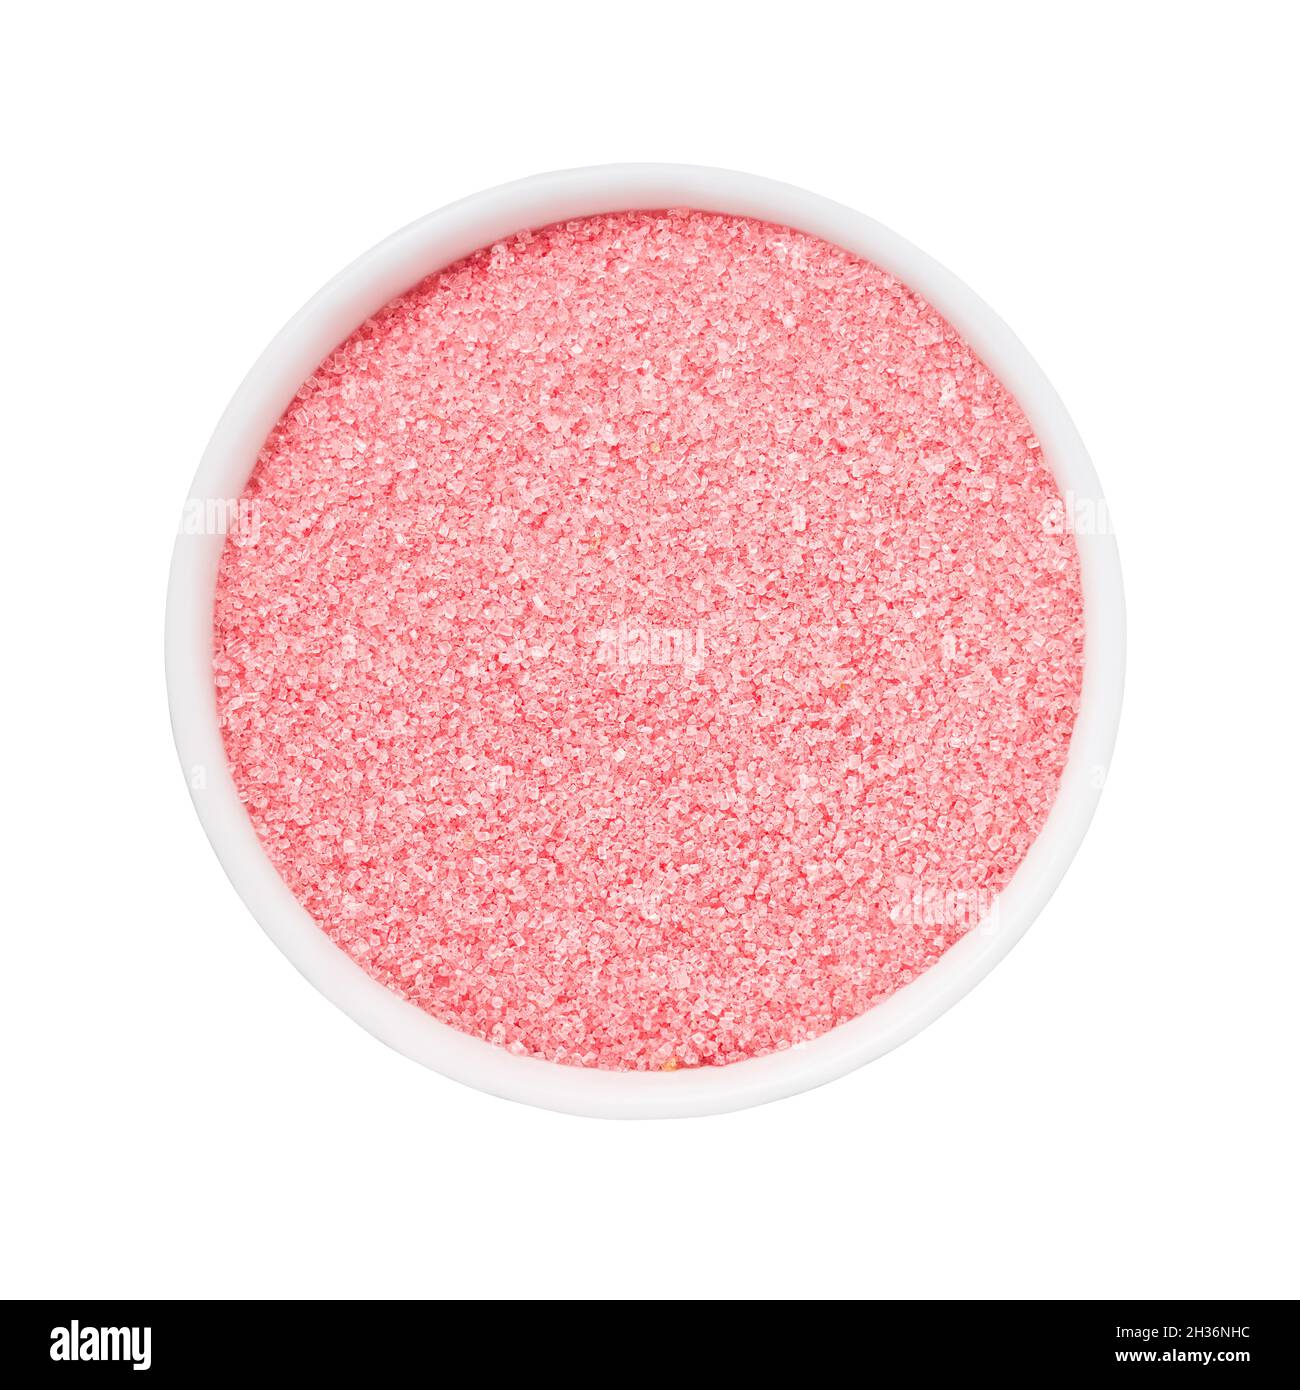 CONCETTO DI SPA. Zucchero rosa da bagno in ciotola isolato su sfondo bianco con percorso di taglio. Vista dall'alto Foto Stock